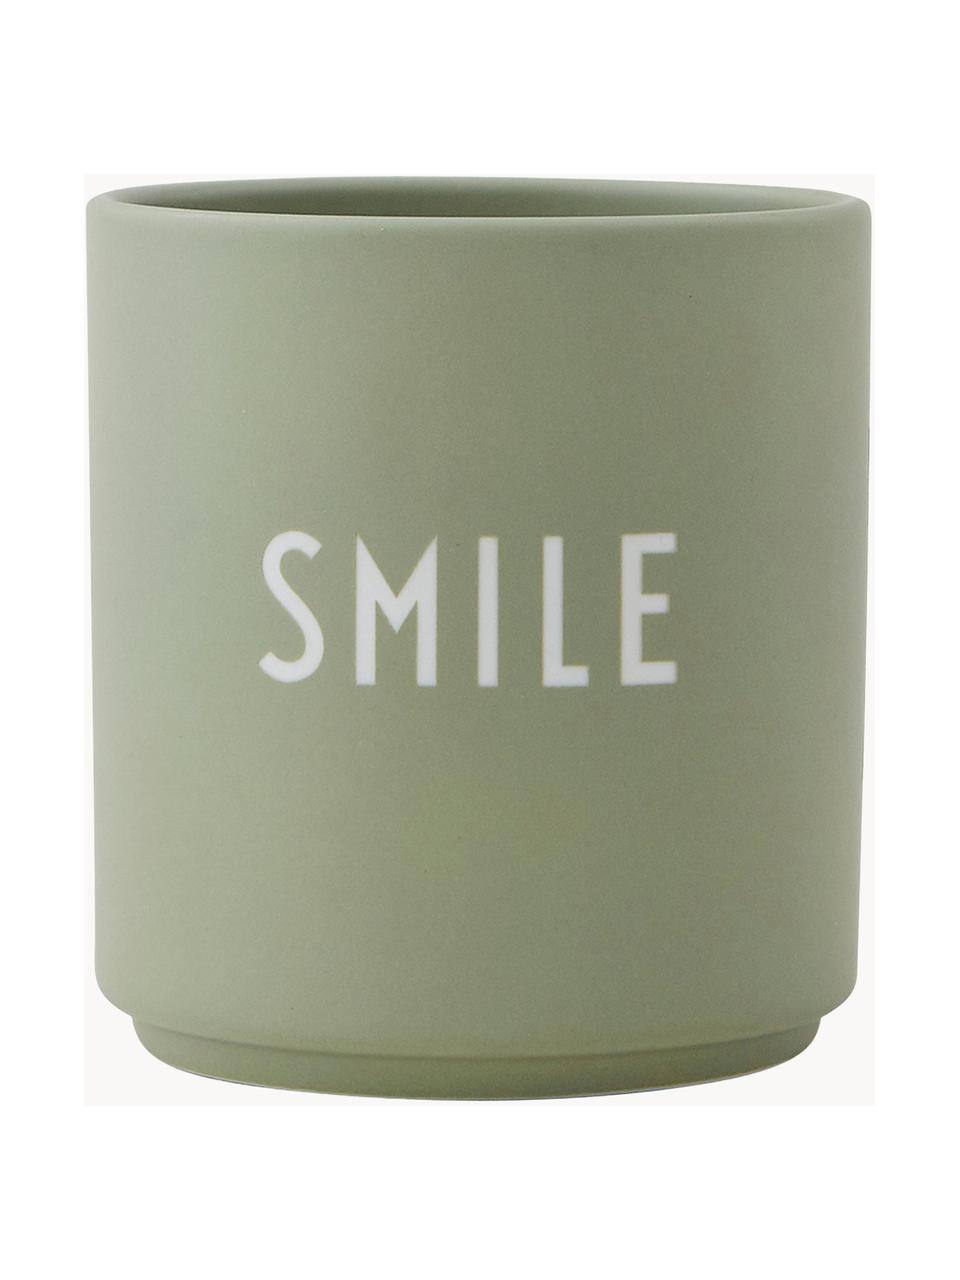 Dizajnérsky hrnček s nápisom SMILE Favourite, Čínsky porcelán
Mäkký porcelán, ktorý sa vyznačuje predovšetkým žiarivým, priehľadným leskom, Olivovozelená (Smile), Ø 8 x V 9 cm, 250 ml